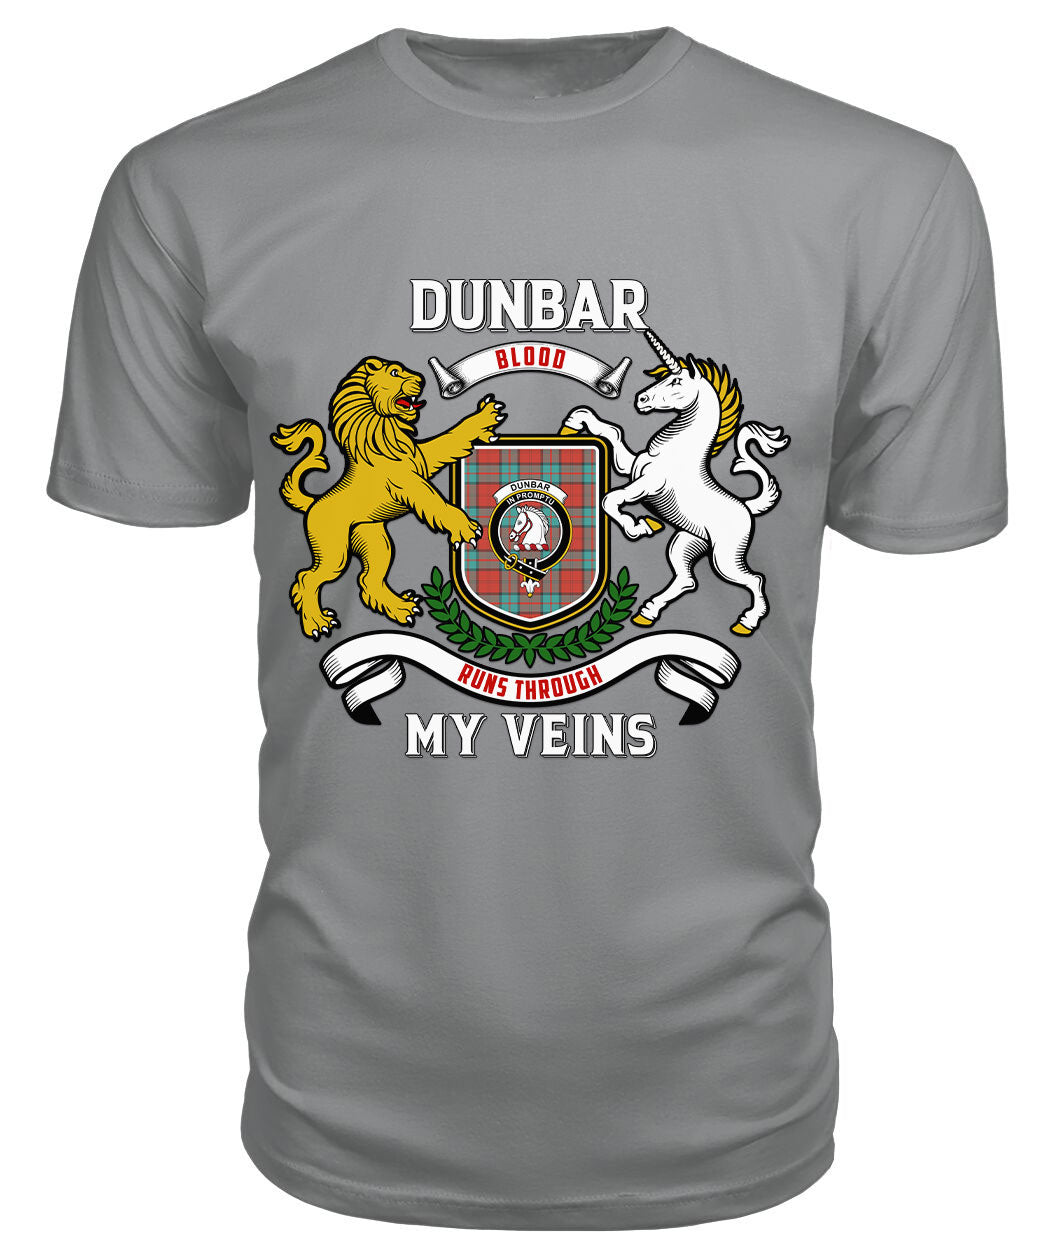 Dunbar Ancient Tartan Crest 2D T-shirt - Blood Runs Through My Veins Style